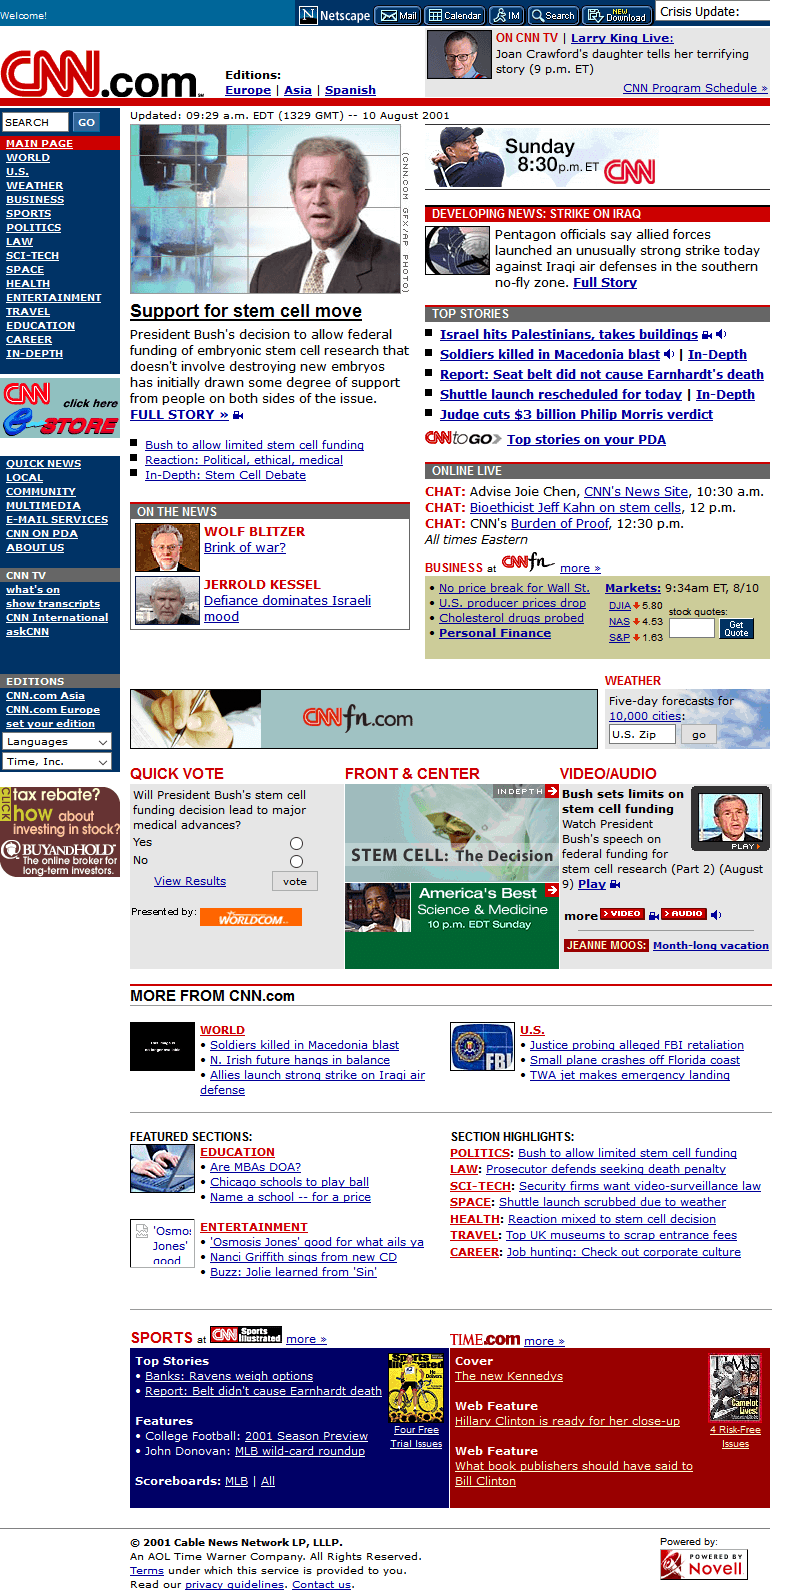 CNN.com website in 2001